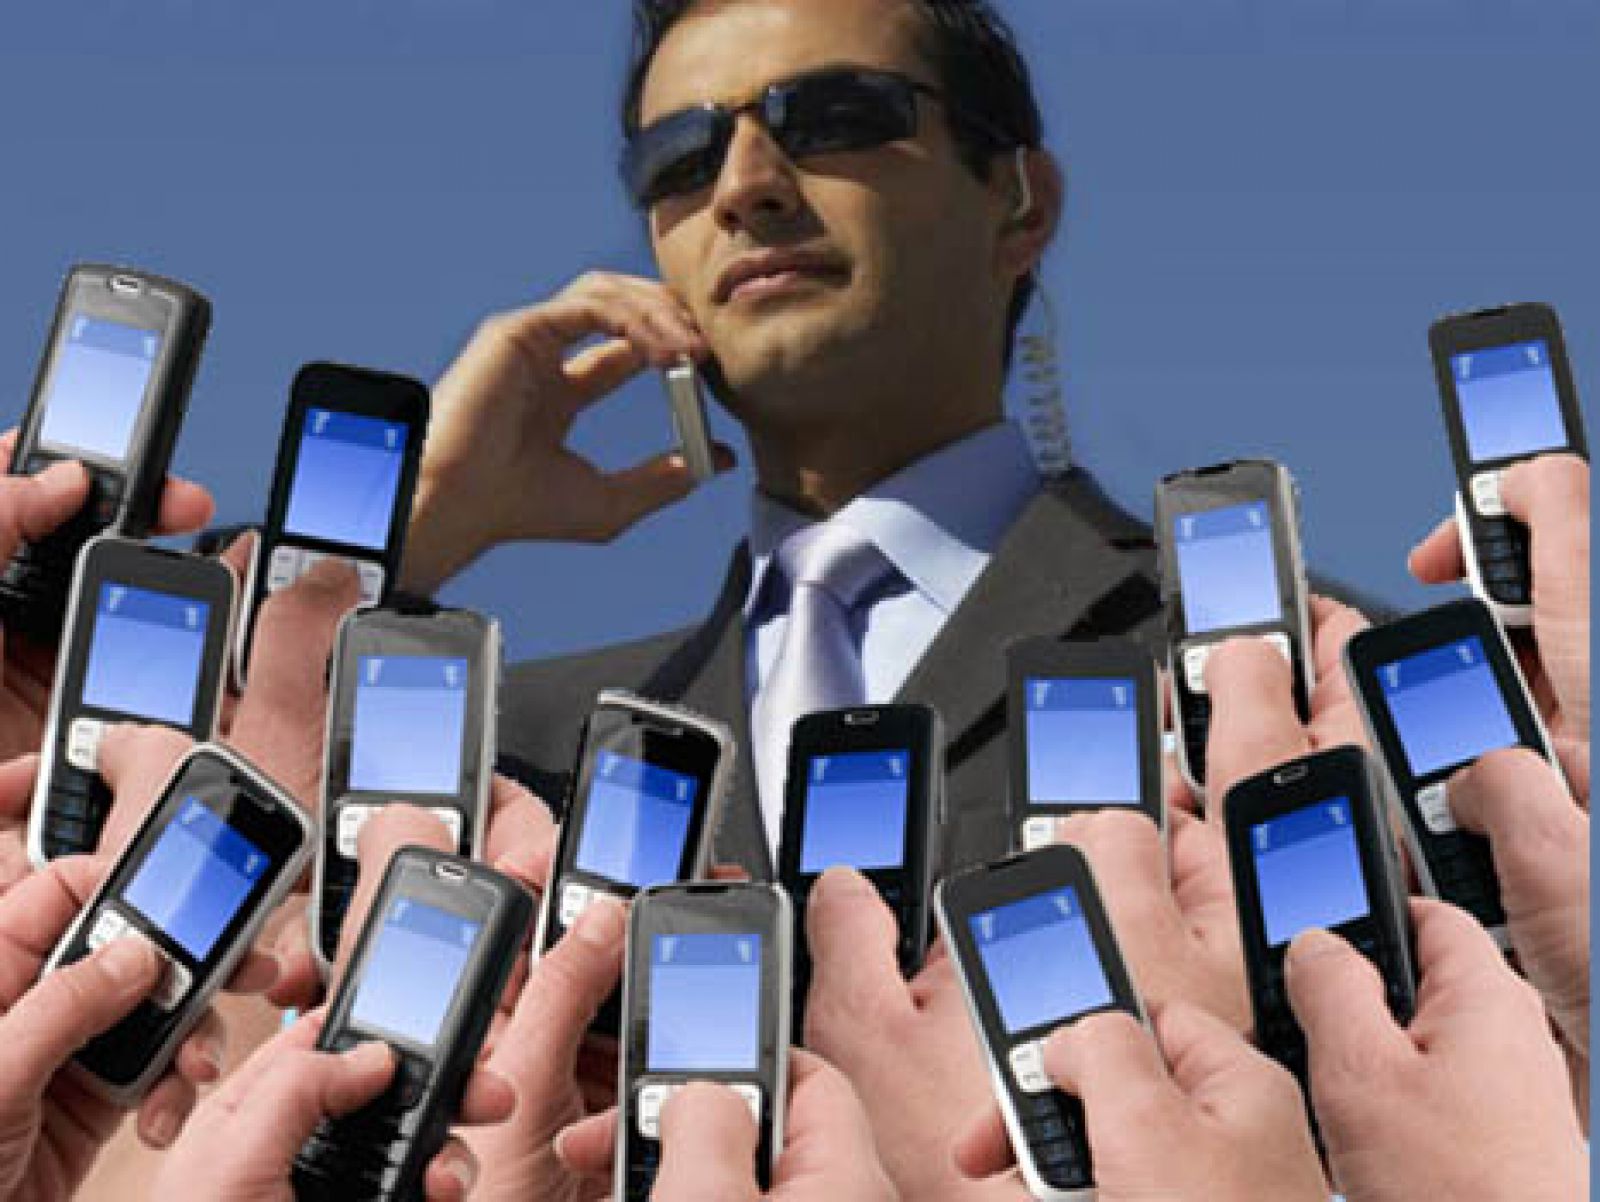 Мобильная связь ру. Сотовая связь. Сотовая мобильная связь. Много людей с телефонами. Человек с кучей телефонов.